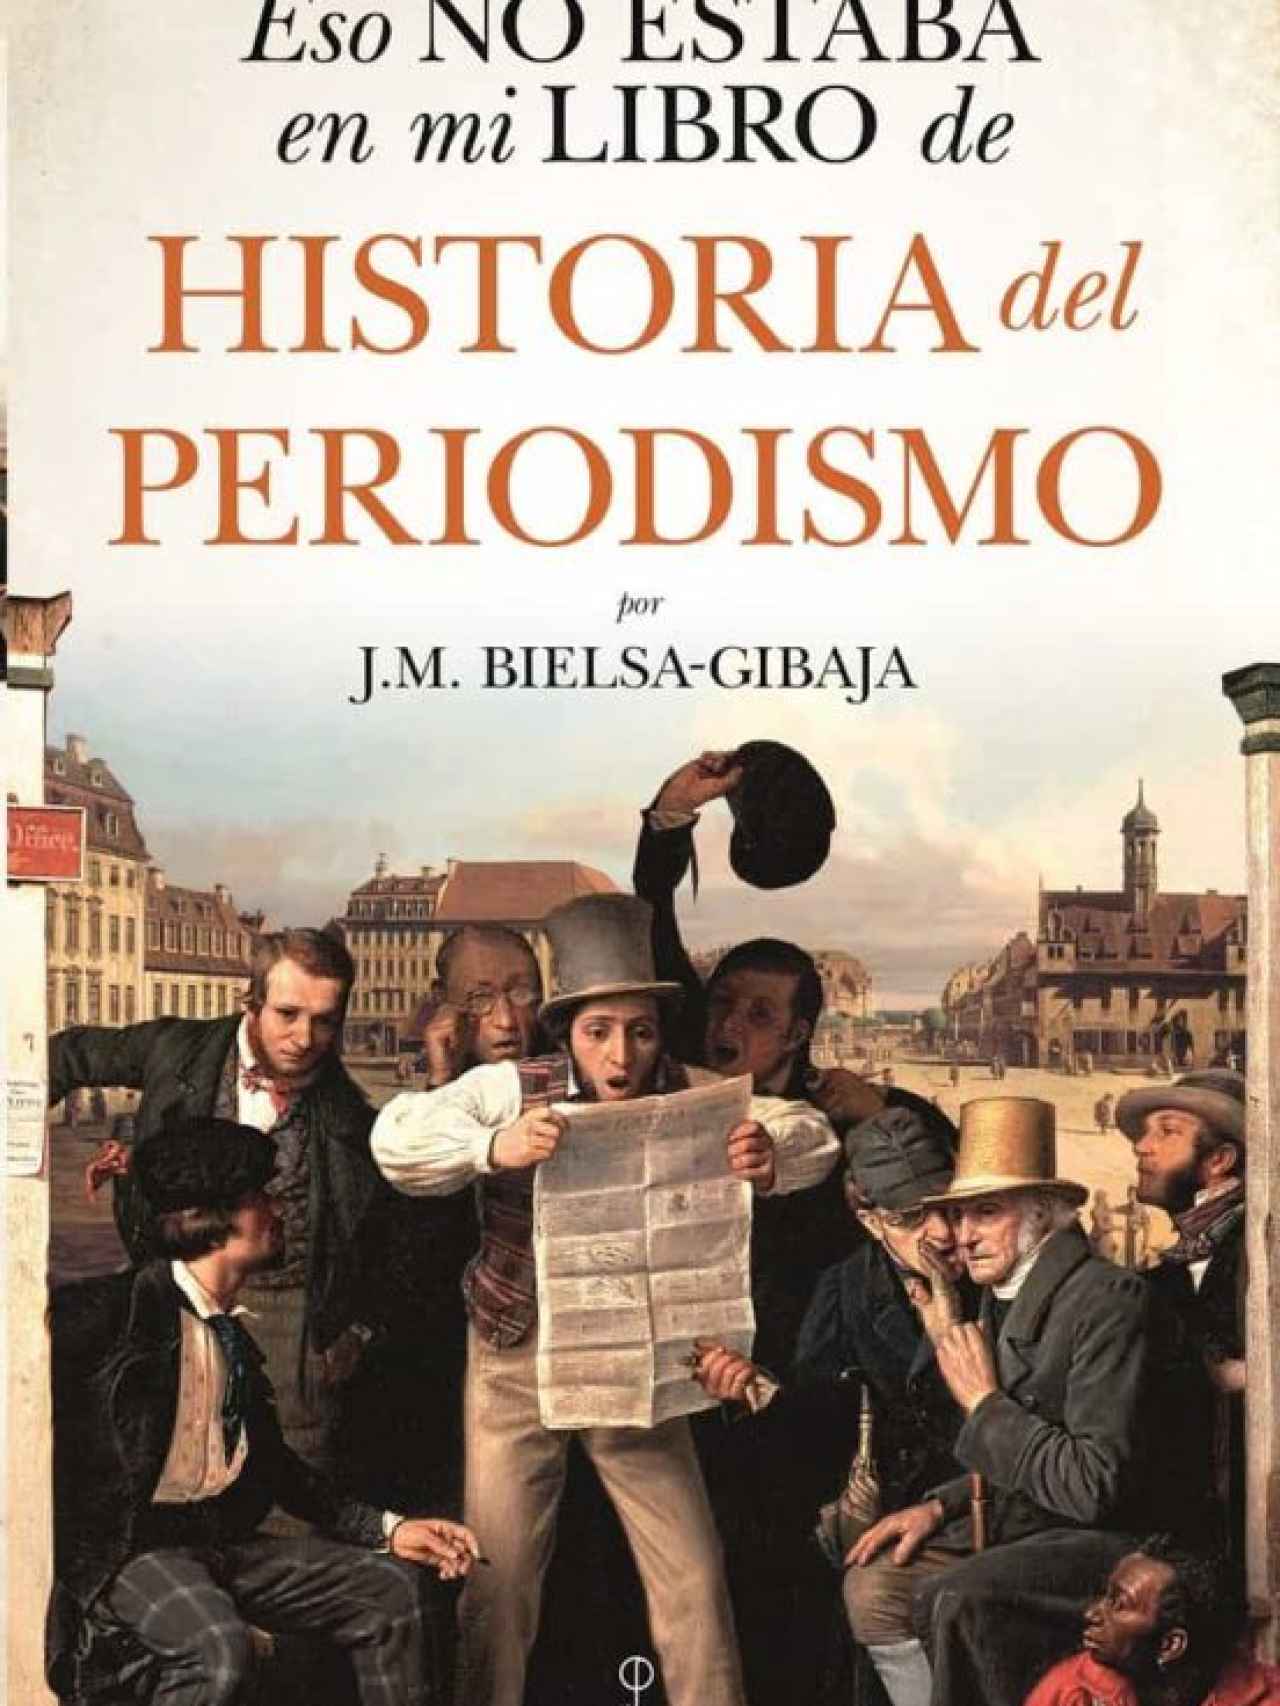 Portada de 'Eso no estaba en mi libro de Historia del Periodismo', de J.M.Bielsa-Gibaja.